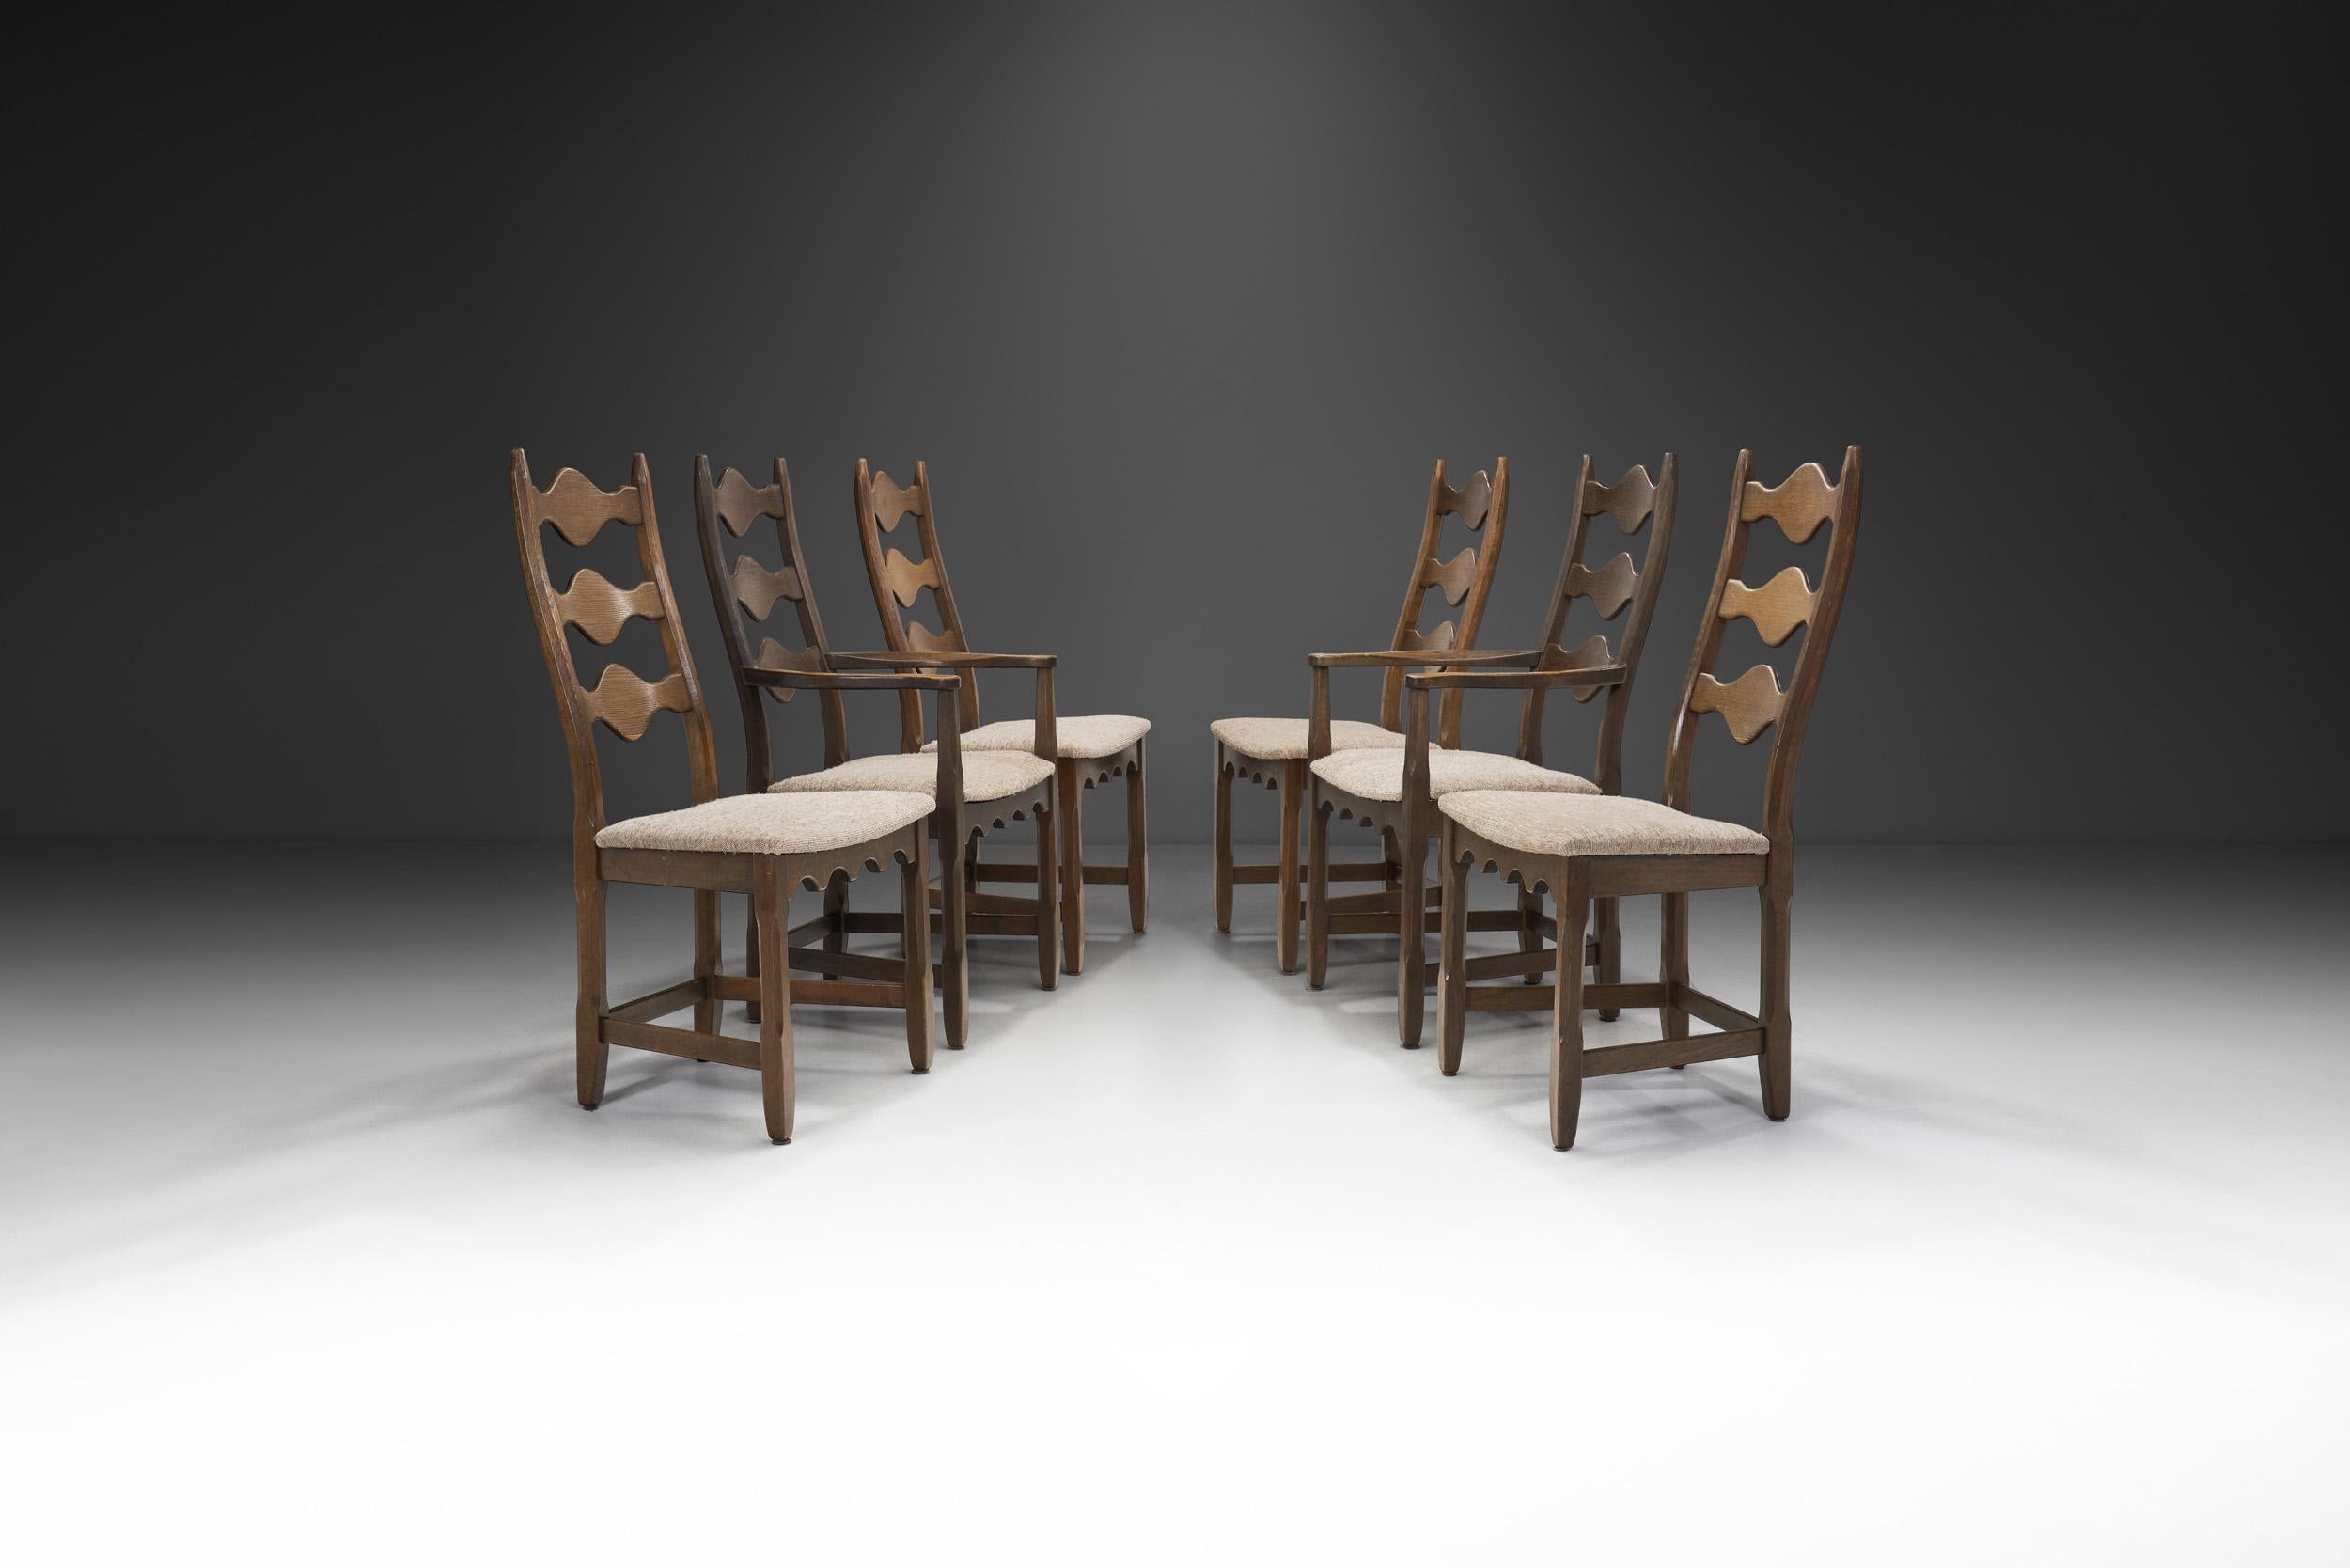 Cet impressionnant ensemble de chaises de salle à manger du milieu du siècle est représentatif des axiomes fondamentaux du design scandinave qui tournent autour de la qualité et de la fonction. Le travail de Kjaernulf témoigne d'un savoir-faire de